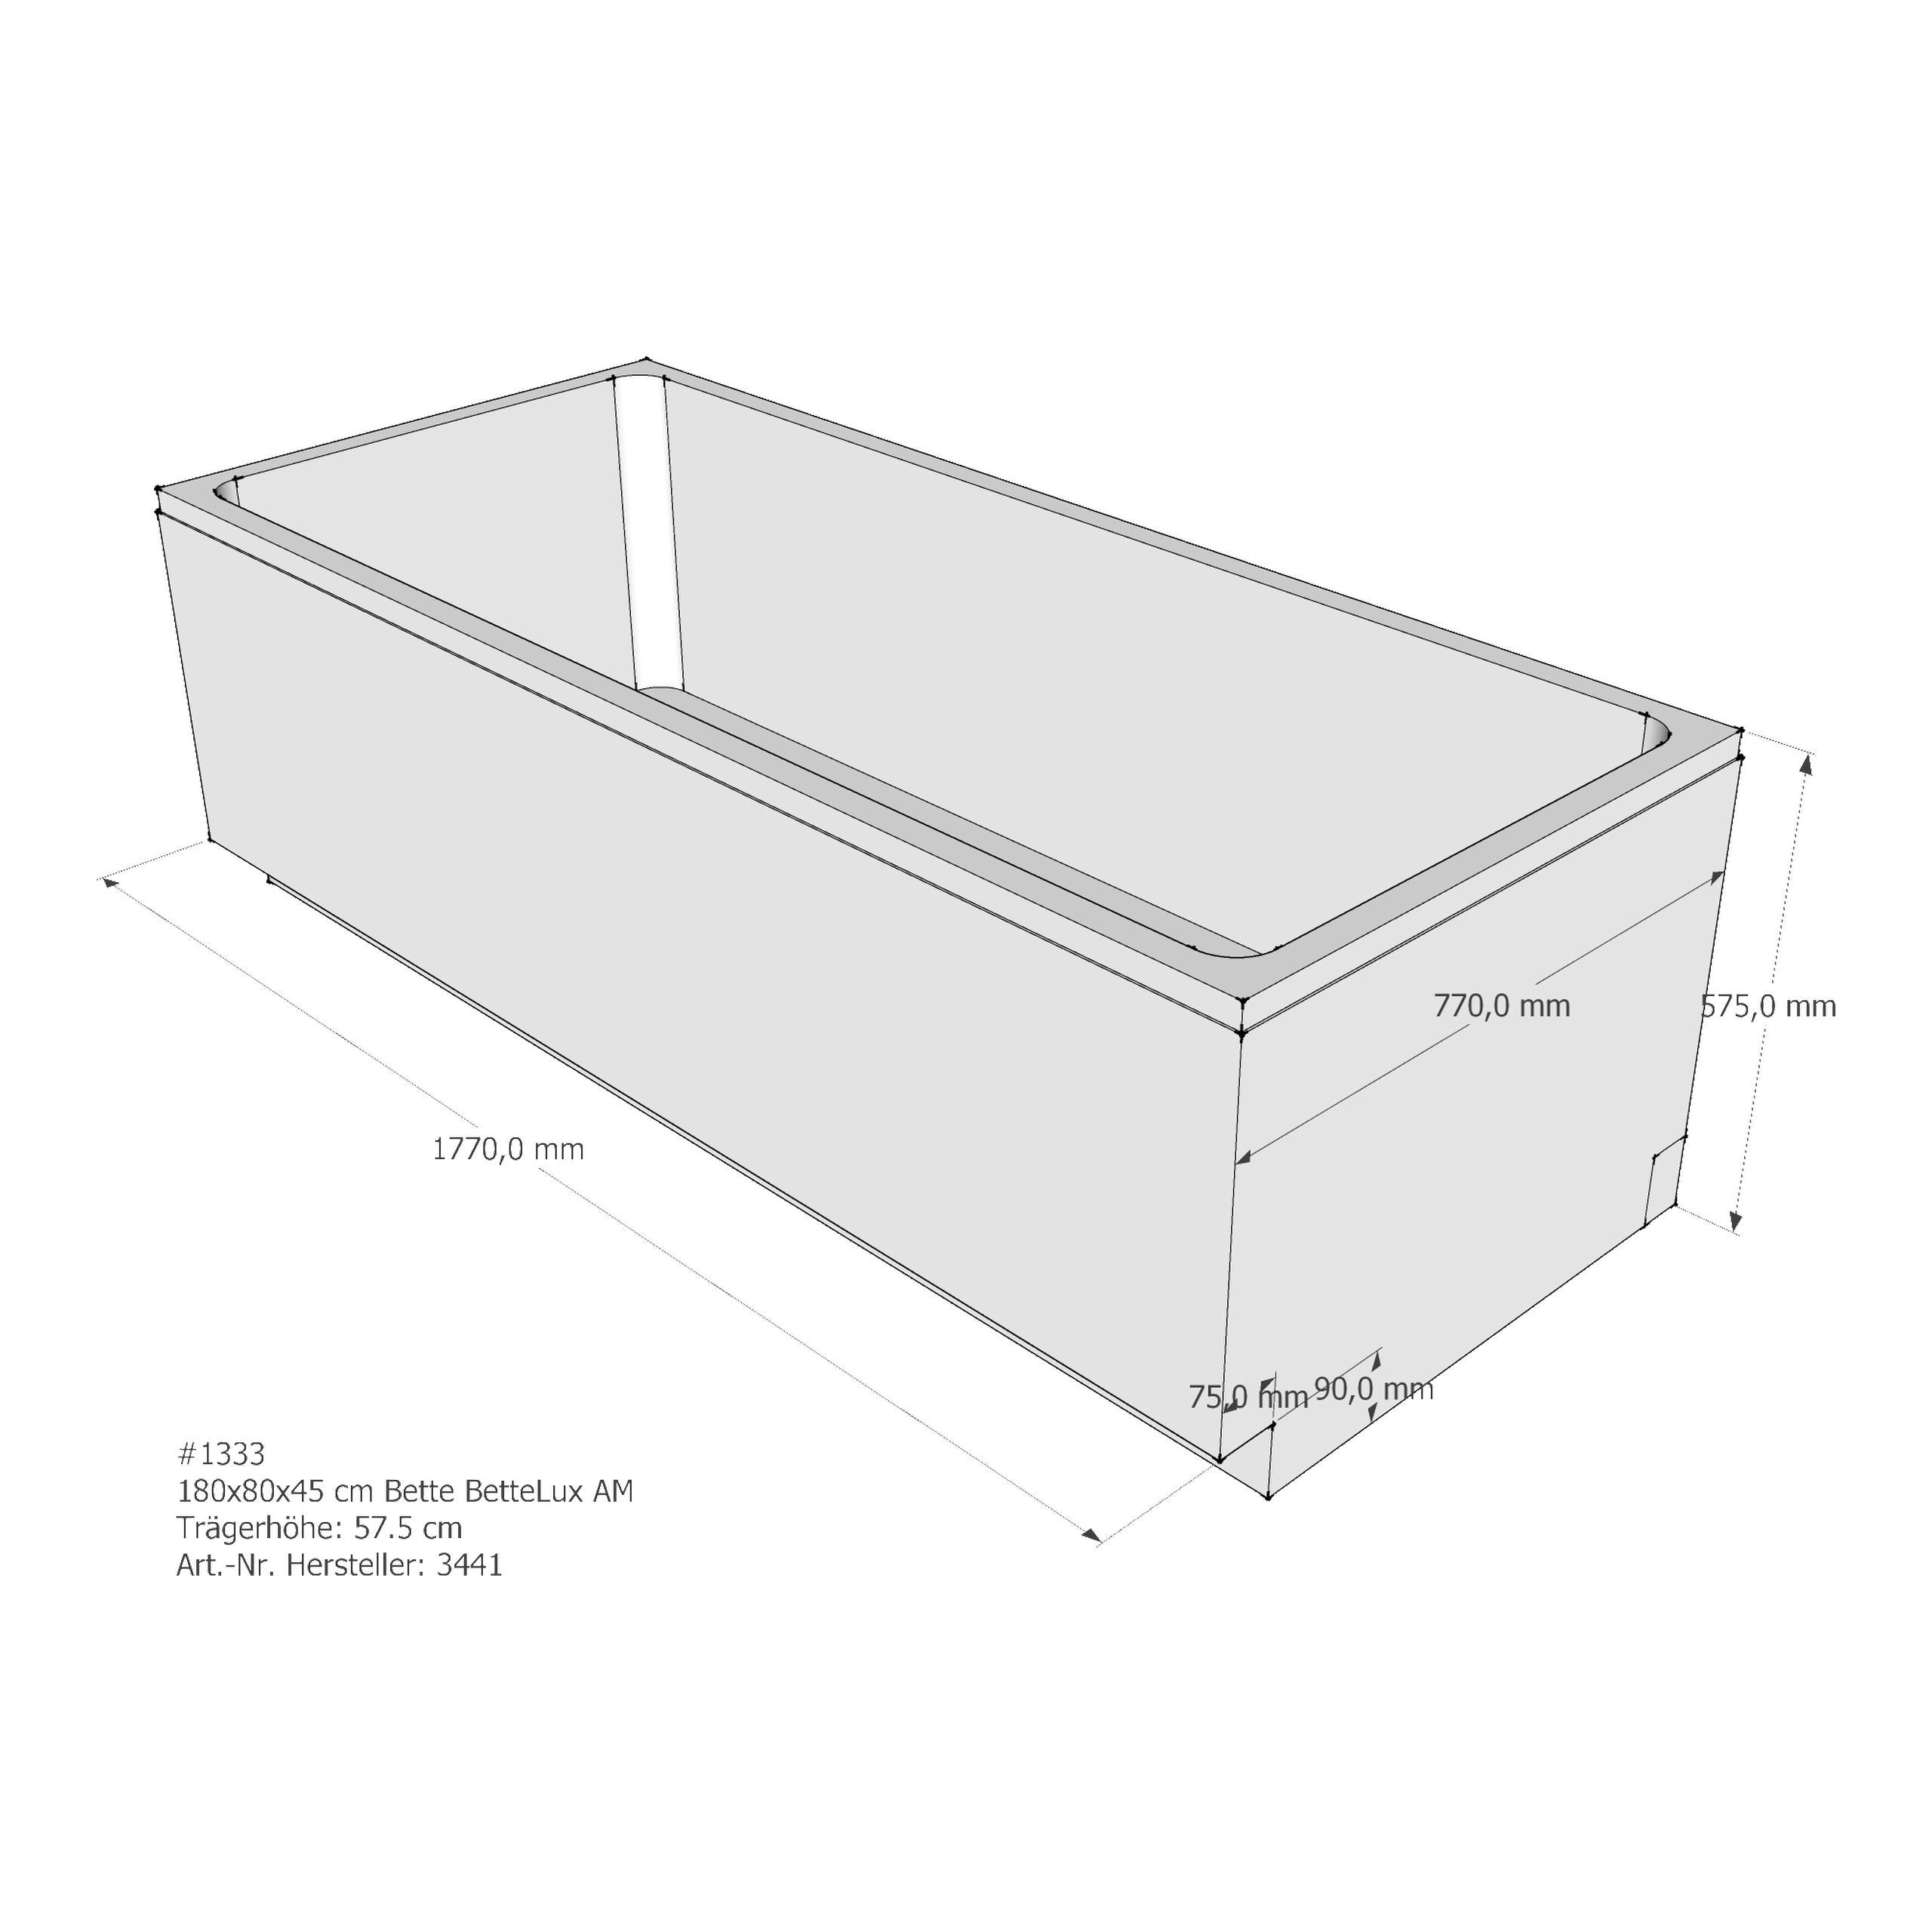 Badewannenträger für Bette BetteLux 180 × 80 × 45 cm